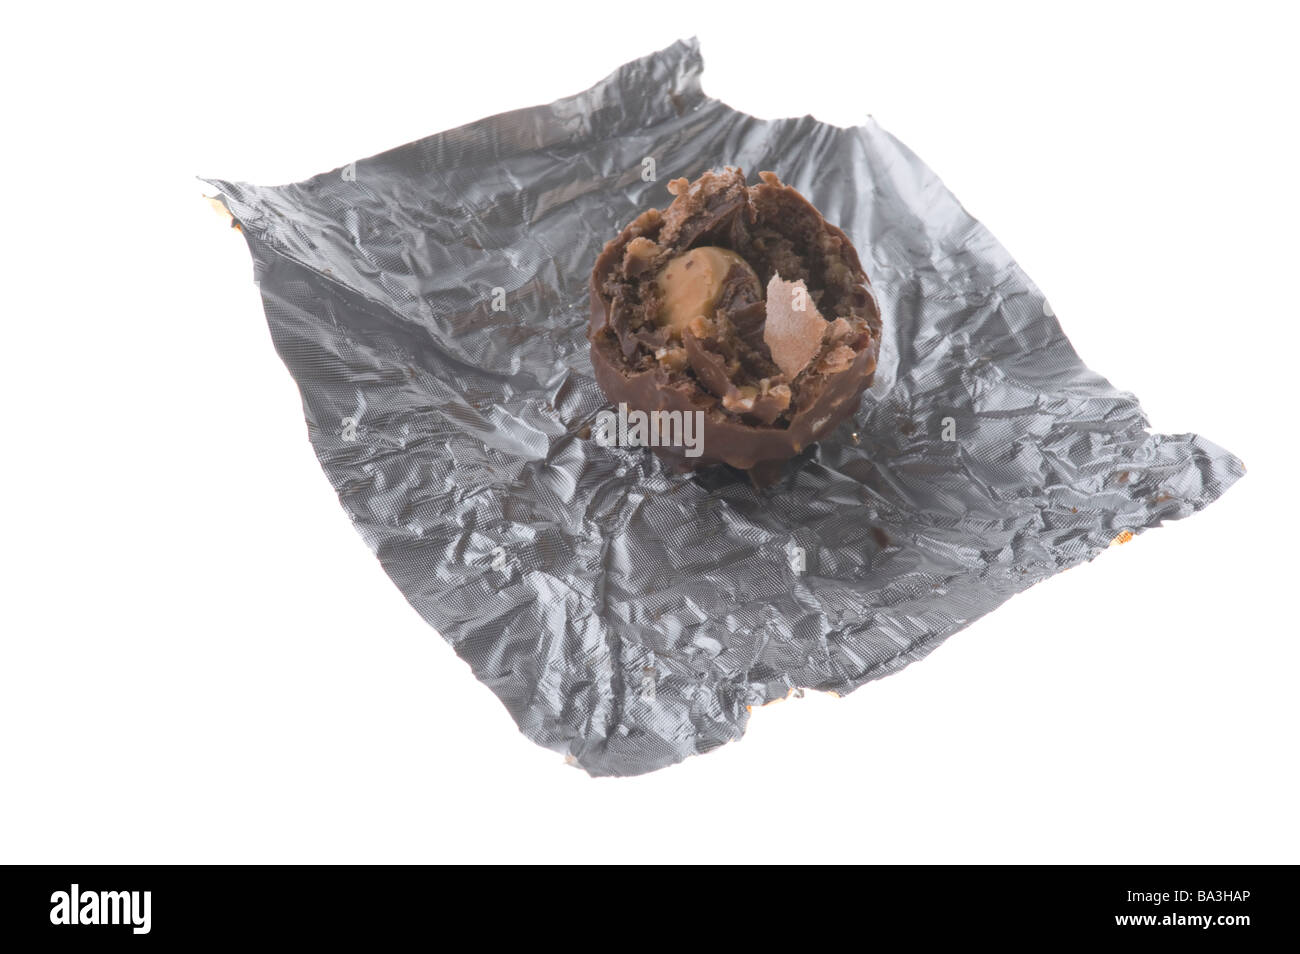 Objekt auf weiße Schokolade essen Süßwaren Stockfoto